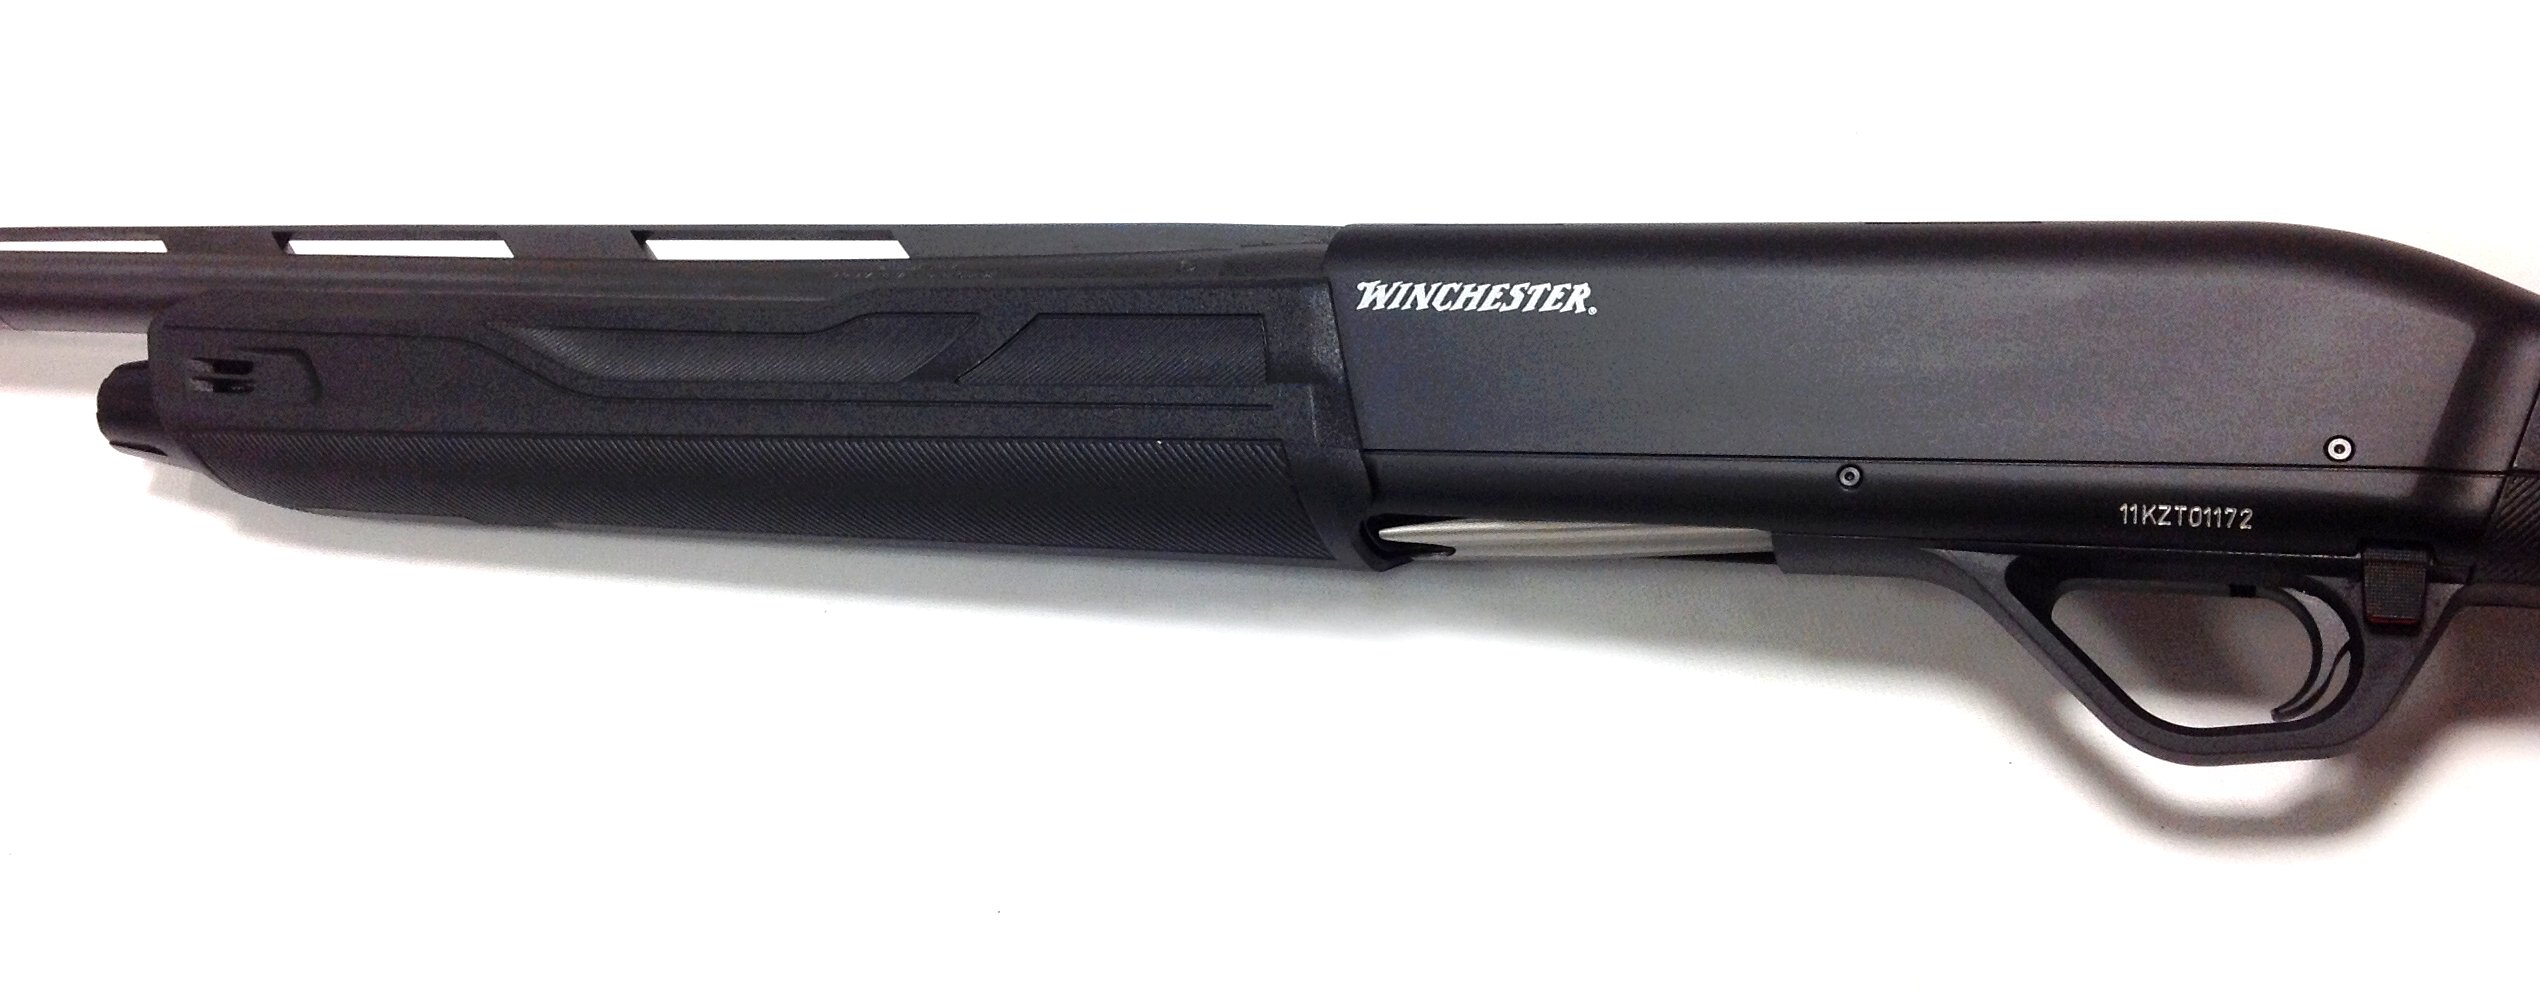 Winchester SX4 Shotguns for sale